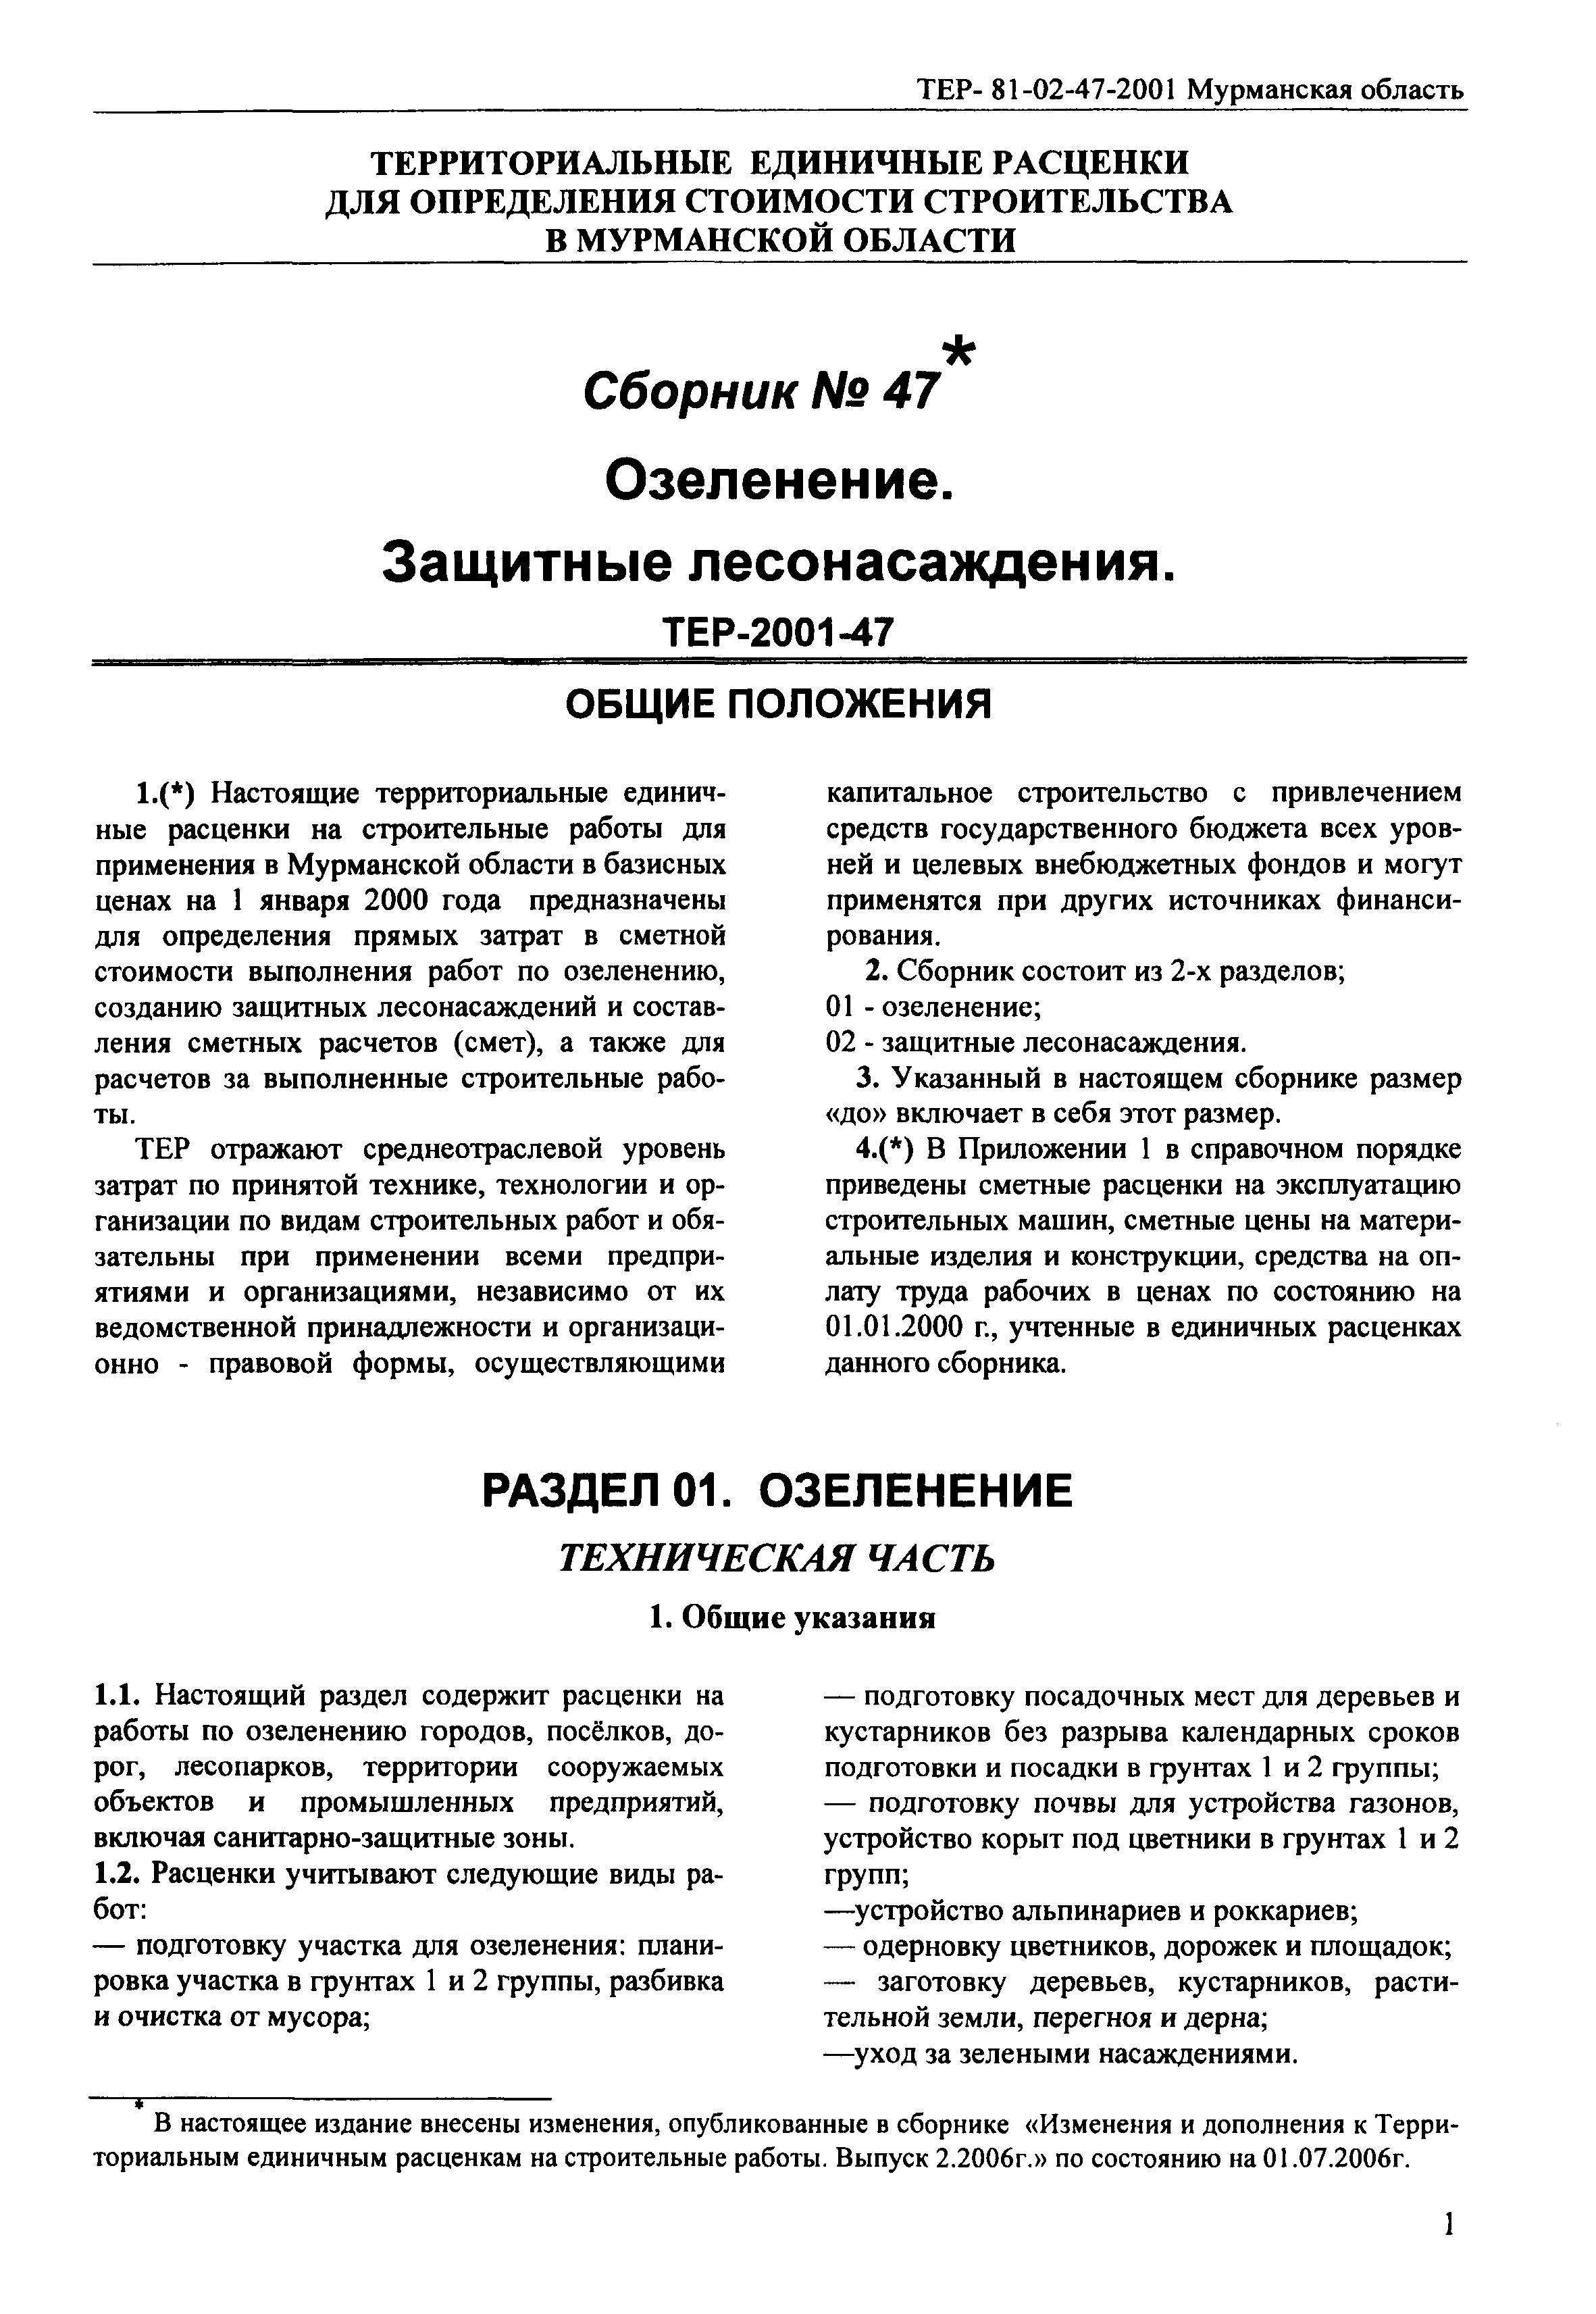 ТЕР Мурманская область 2001-47